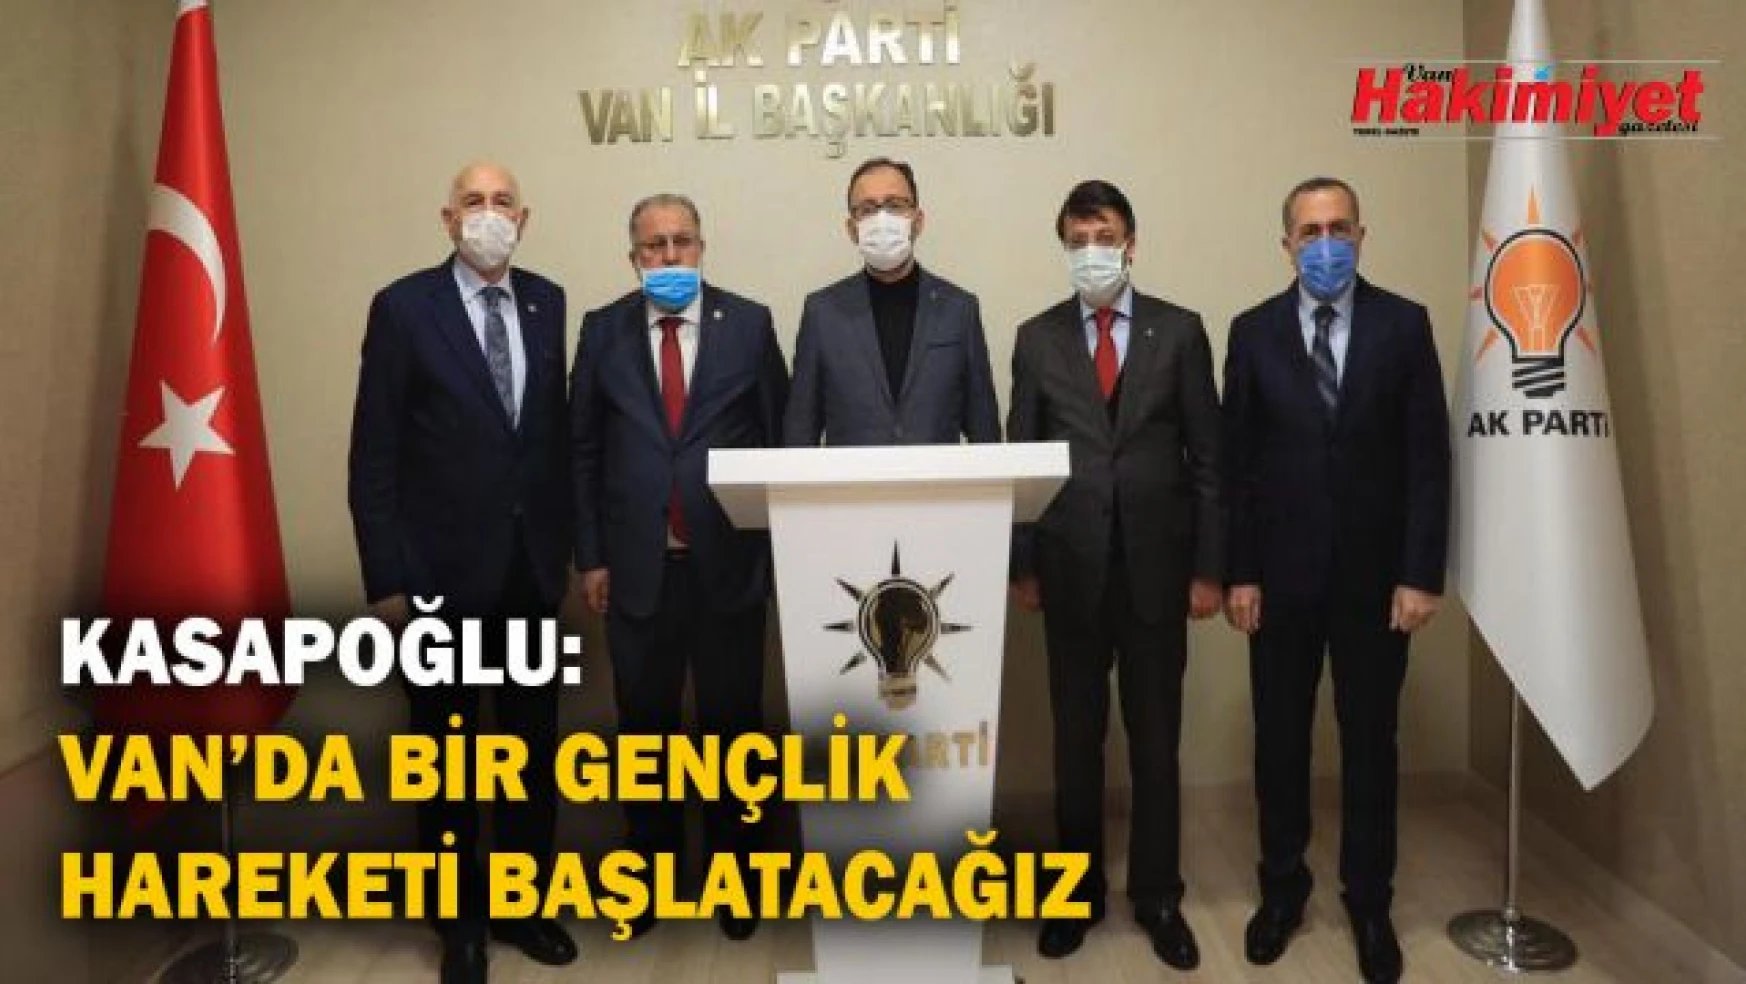 Bakan Kasapoğlu, AK Parti Van İl Başkanlığı ziyaretinde konuştu